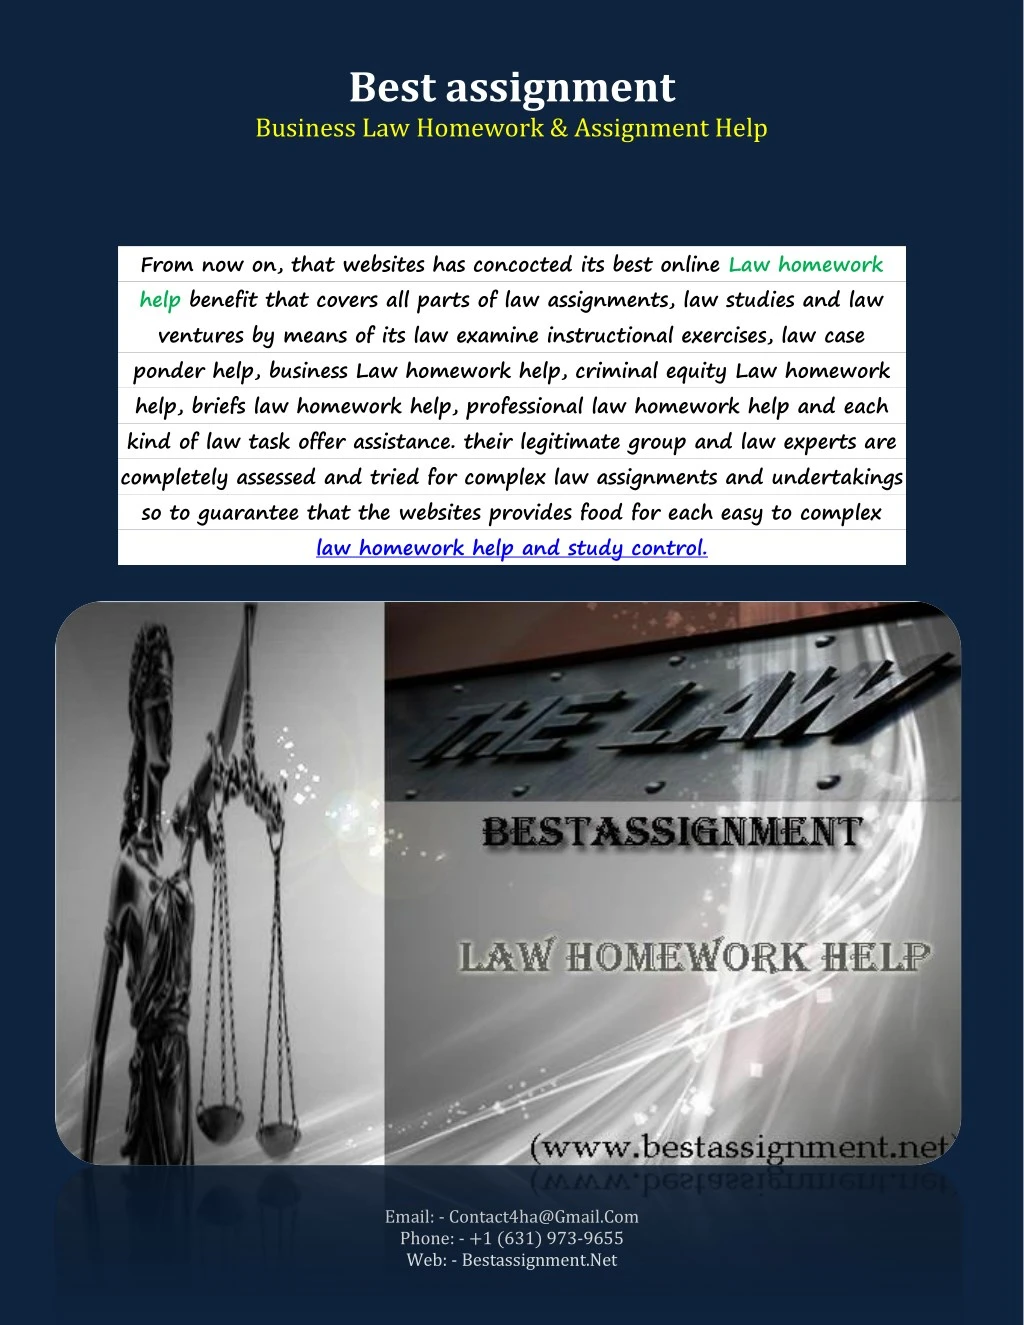 best assignment business law homework assignment